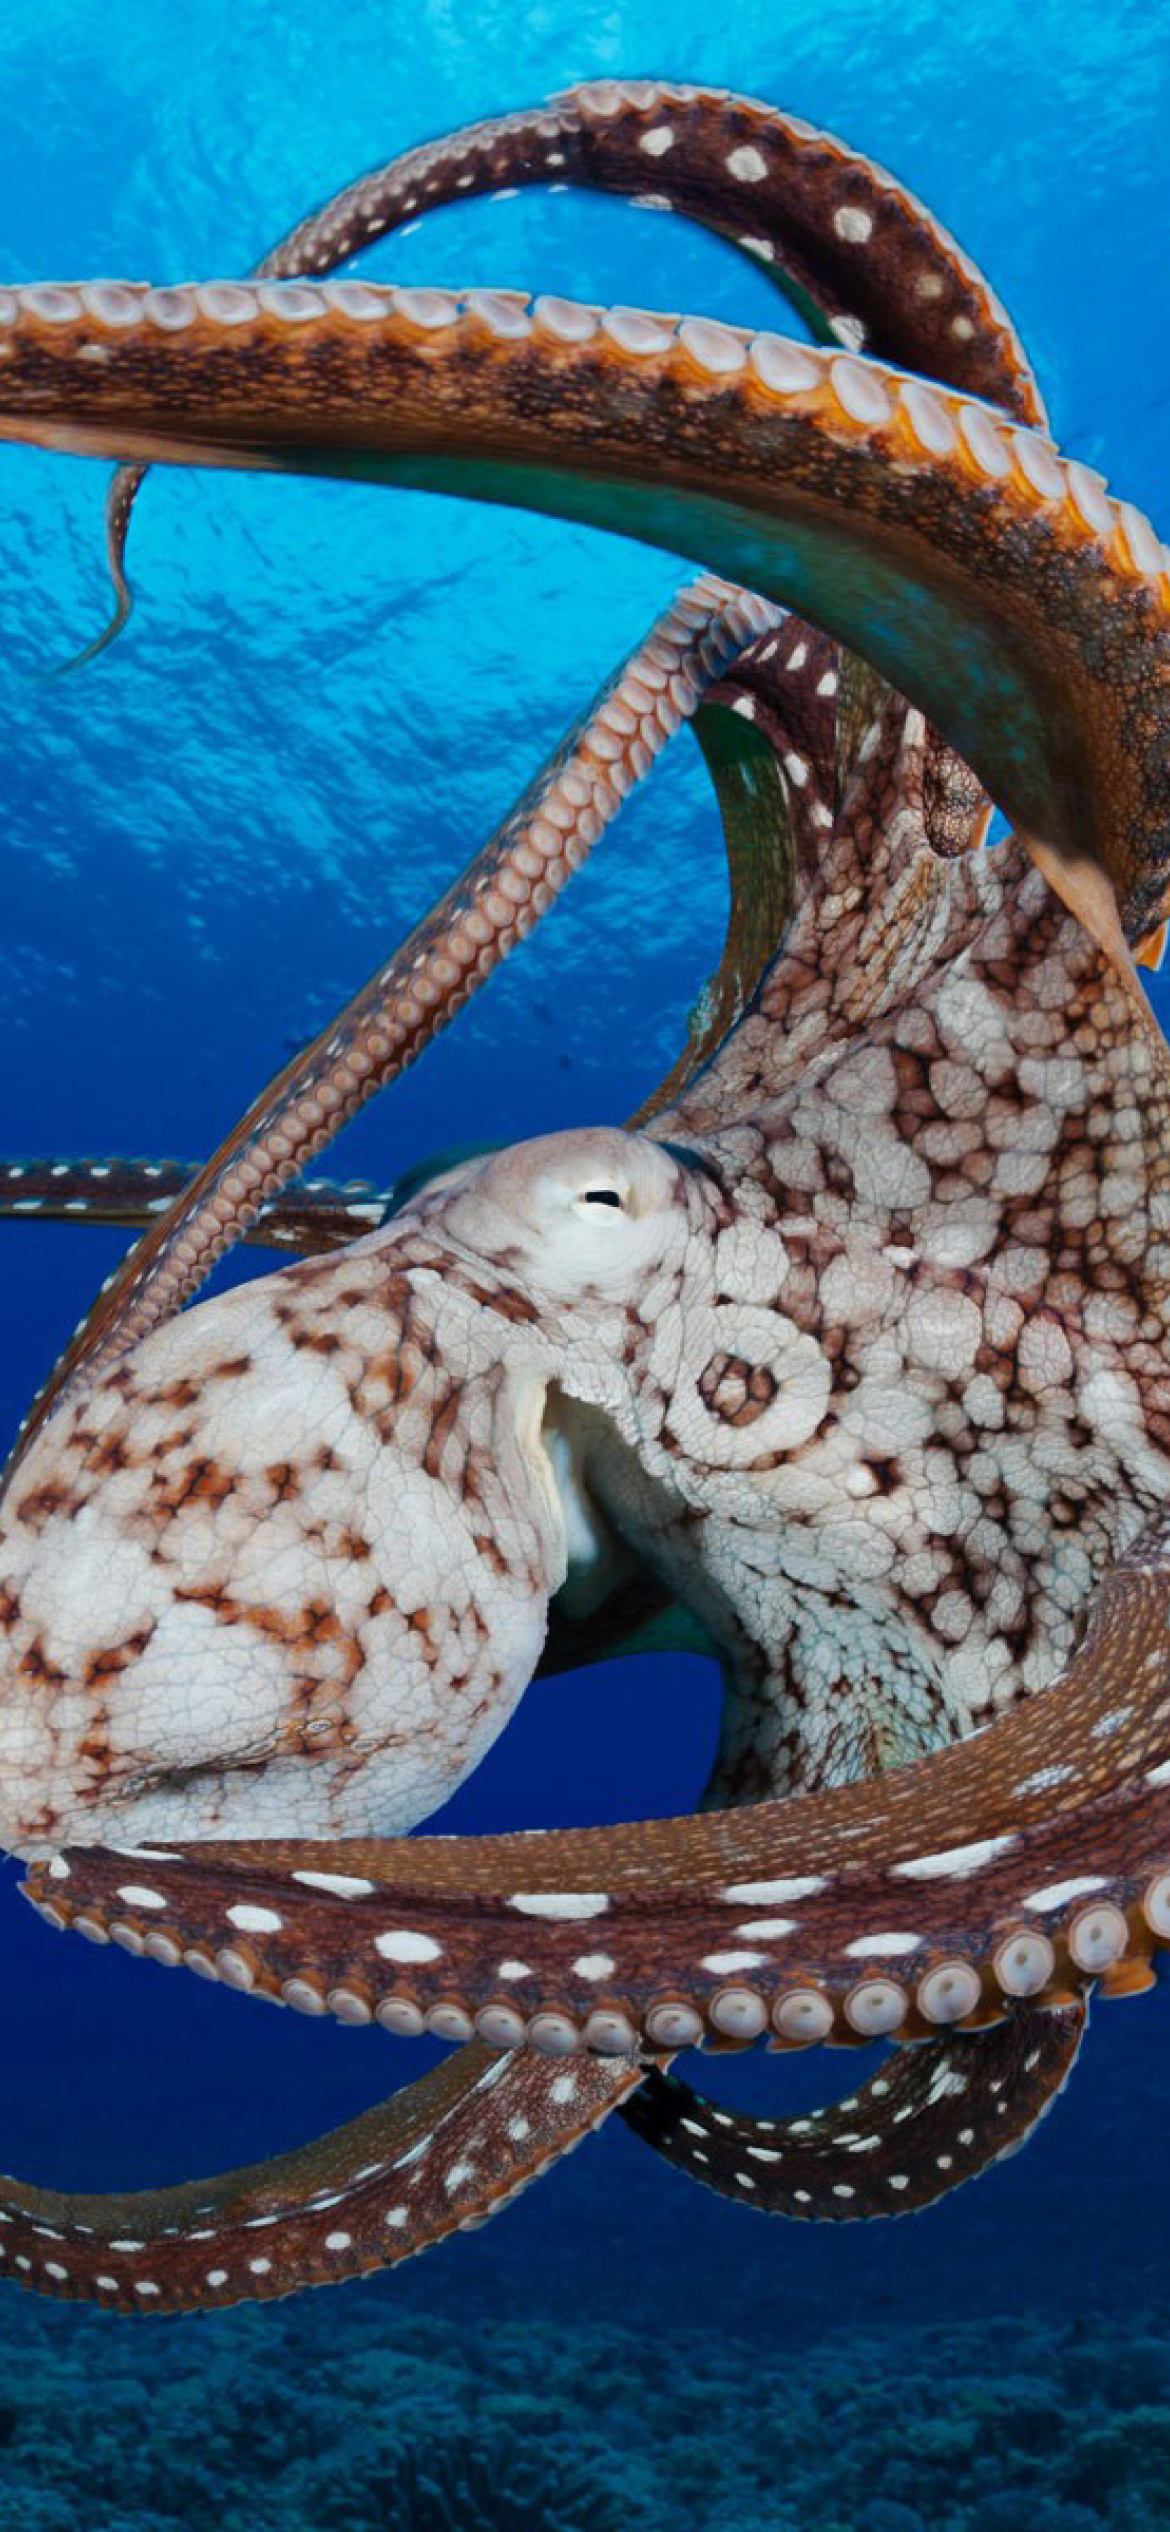 Octopus in the Atlantic Ocean wallpaper 1170x2532